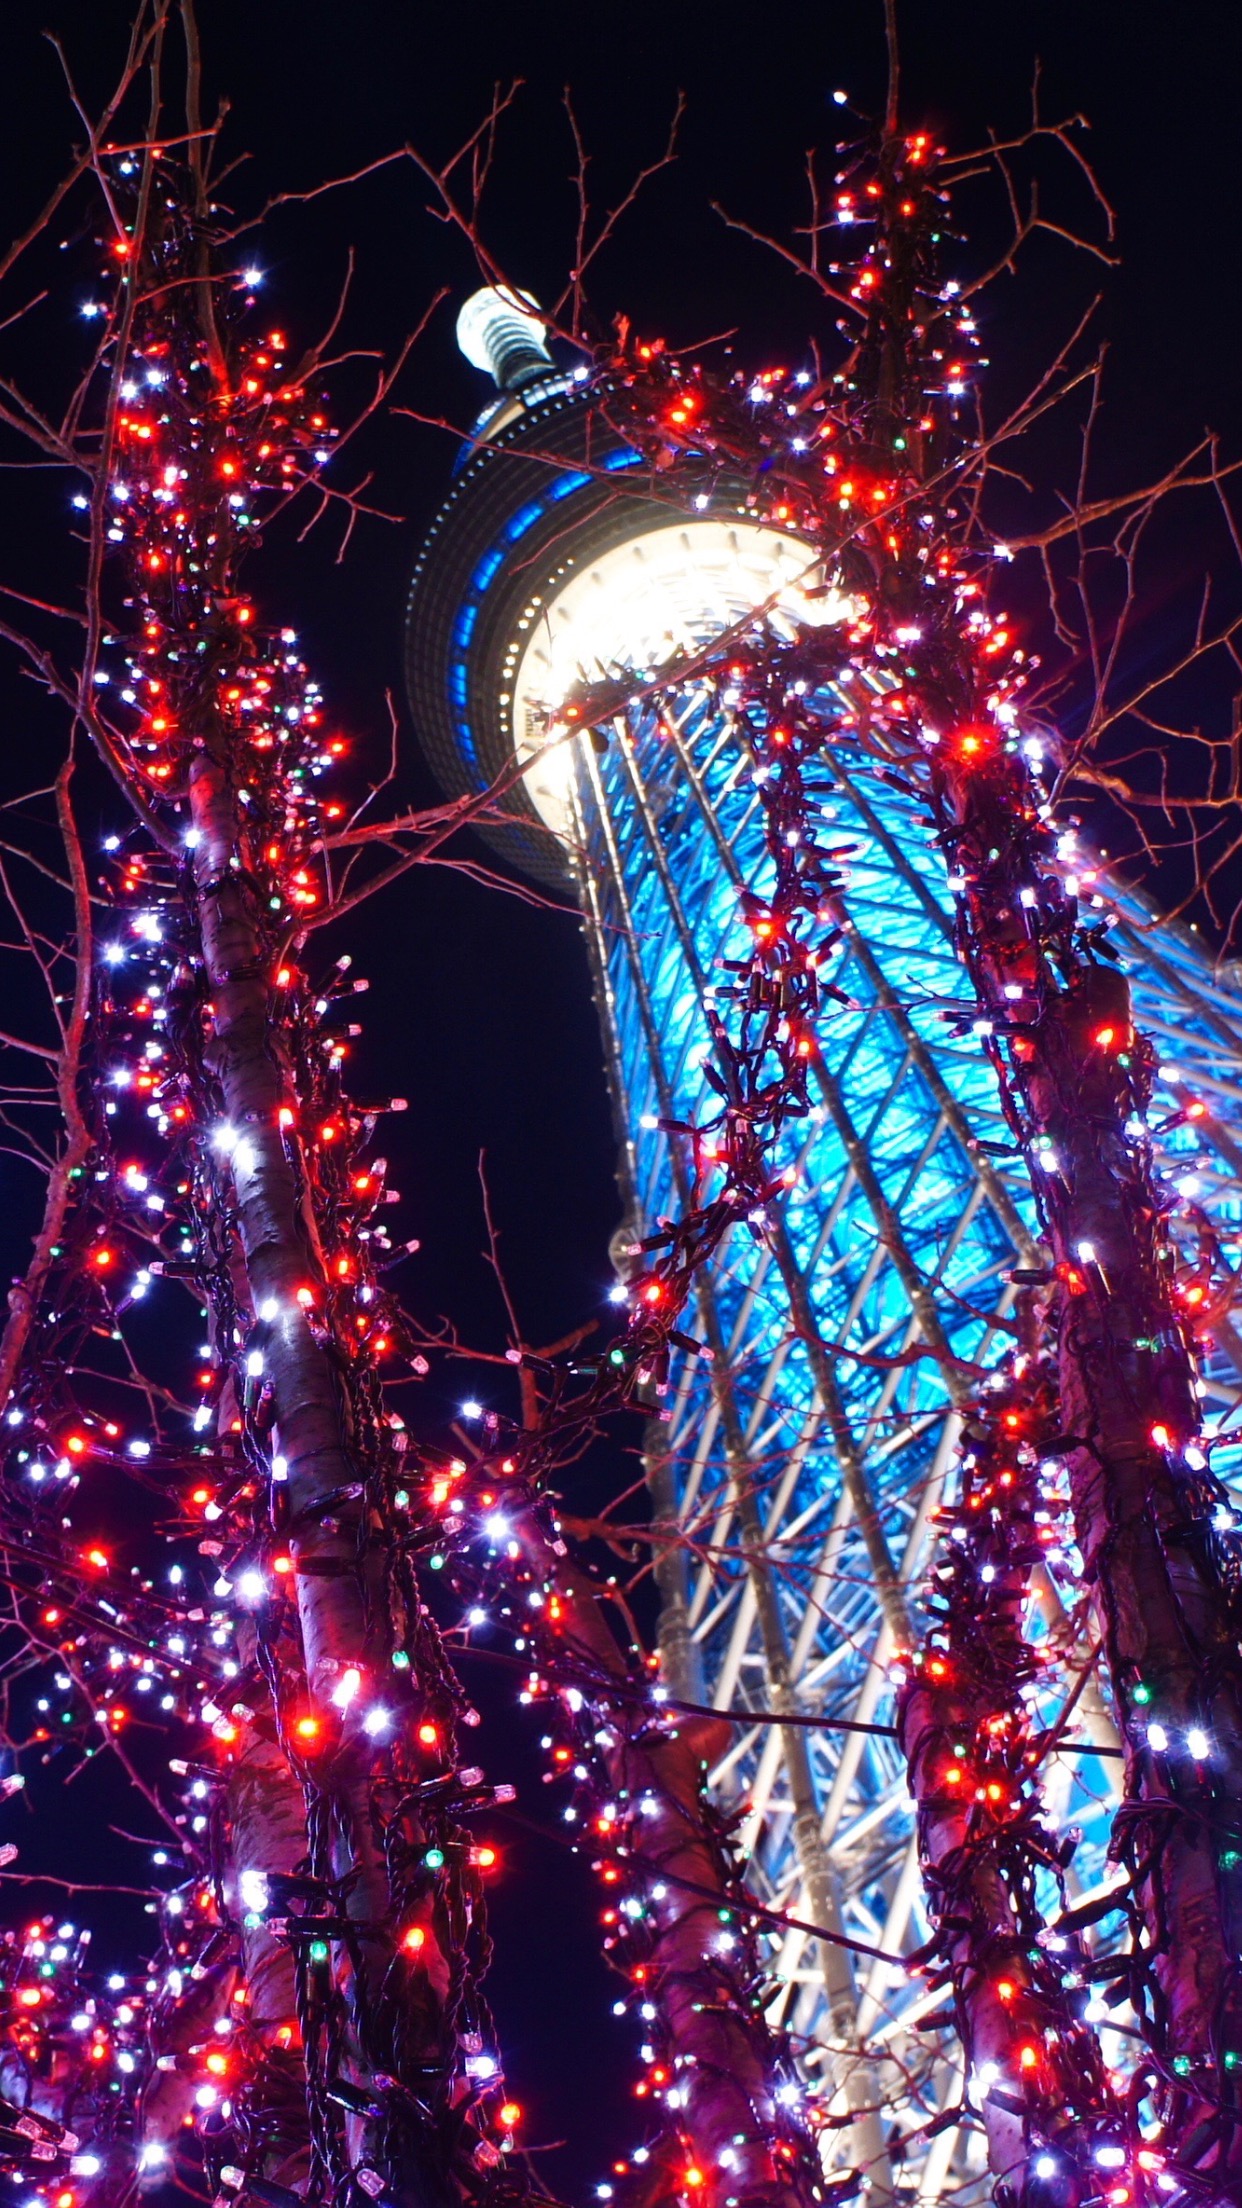 tokyo sfondi per iphone,luci di natale,decorazione natalizia,albero,illuminazione,natale